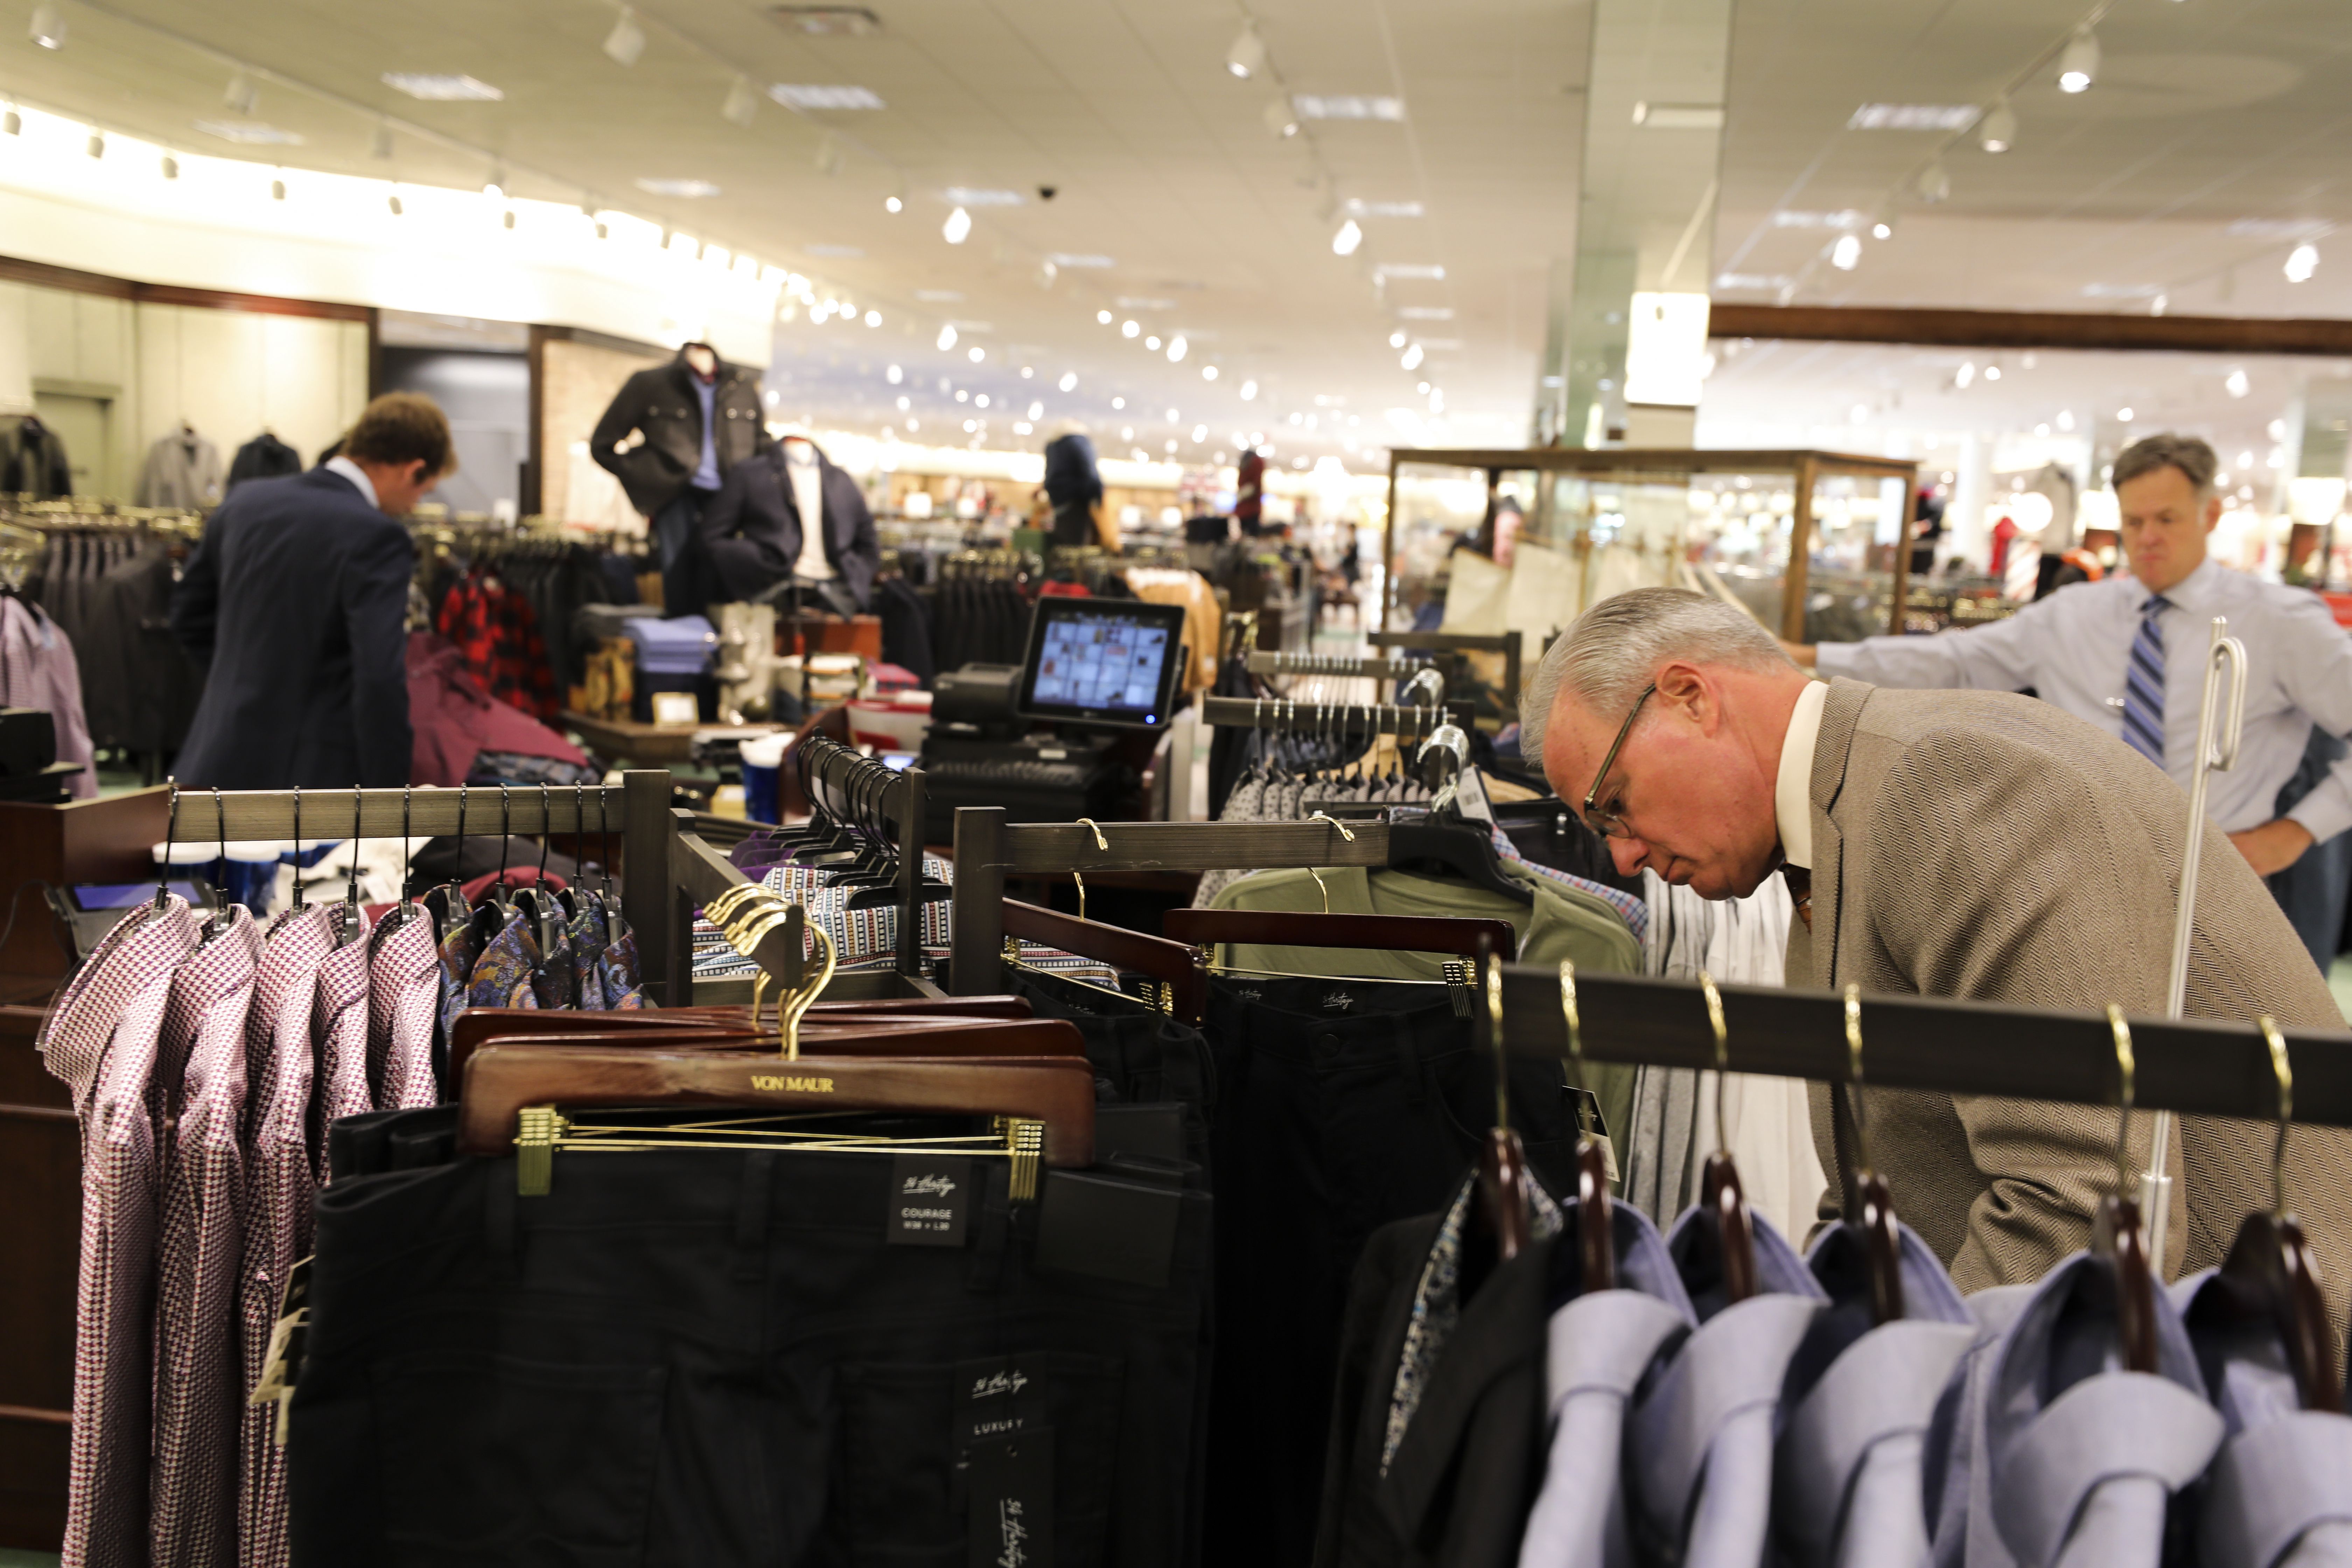 Shoppers, workers return to Von Maur